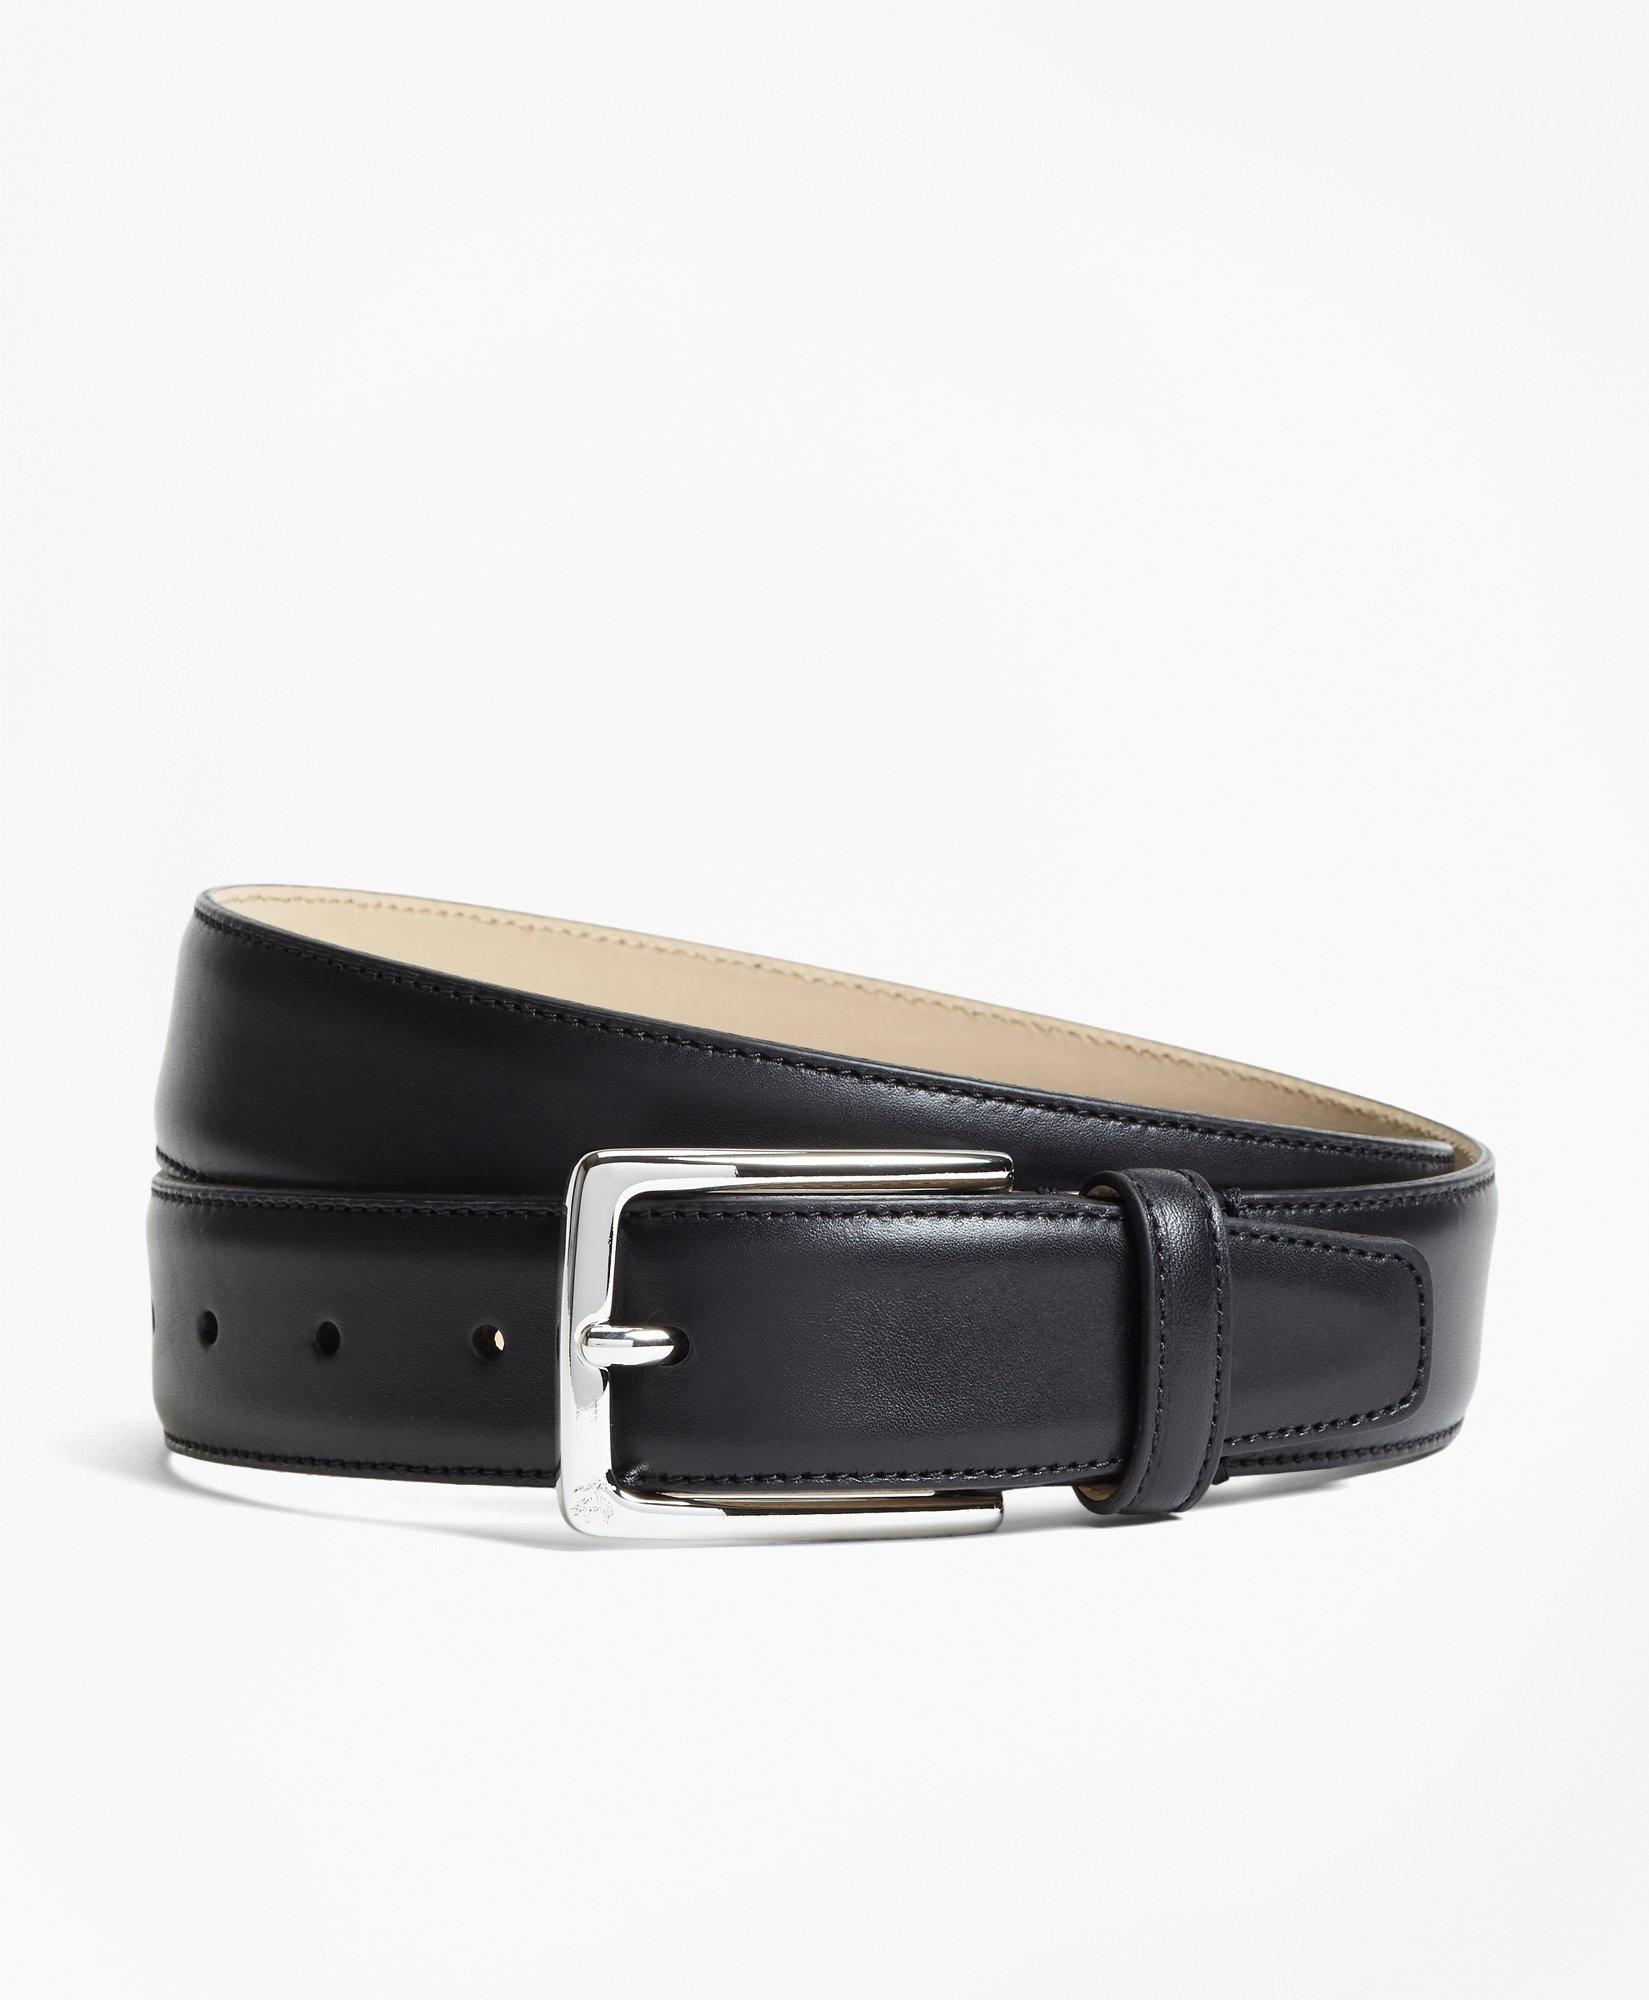 1818 Leather Belt, image 1